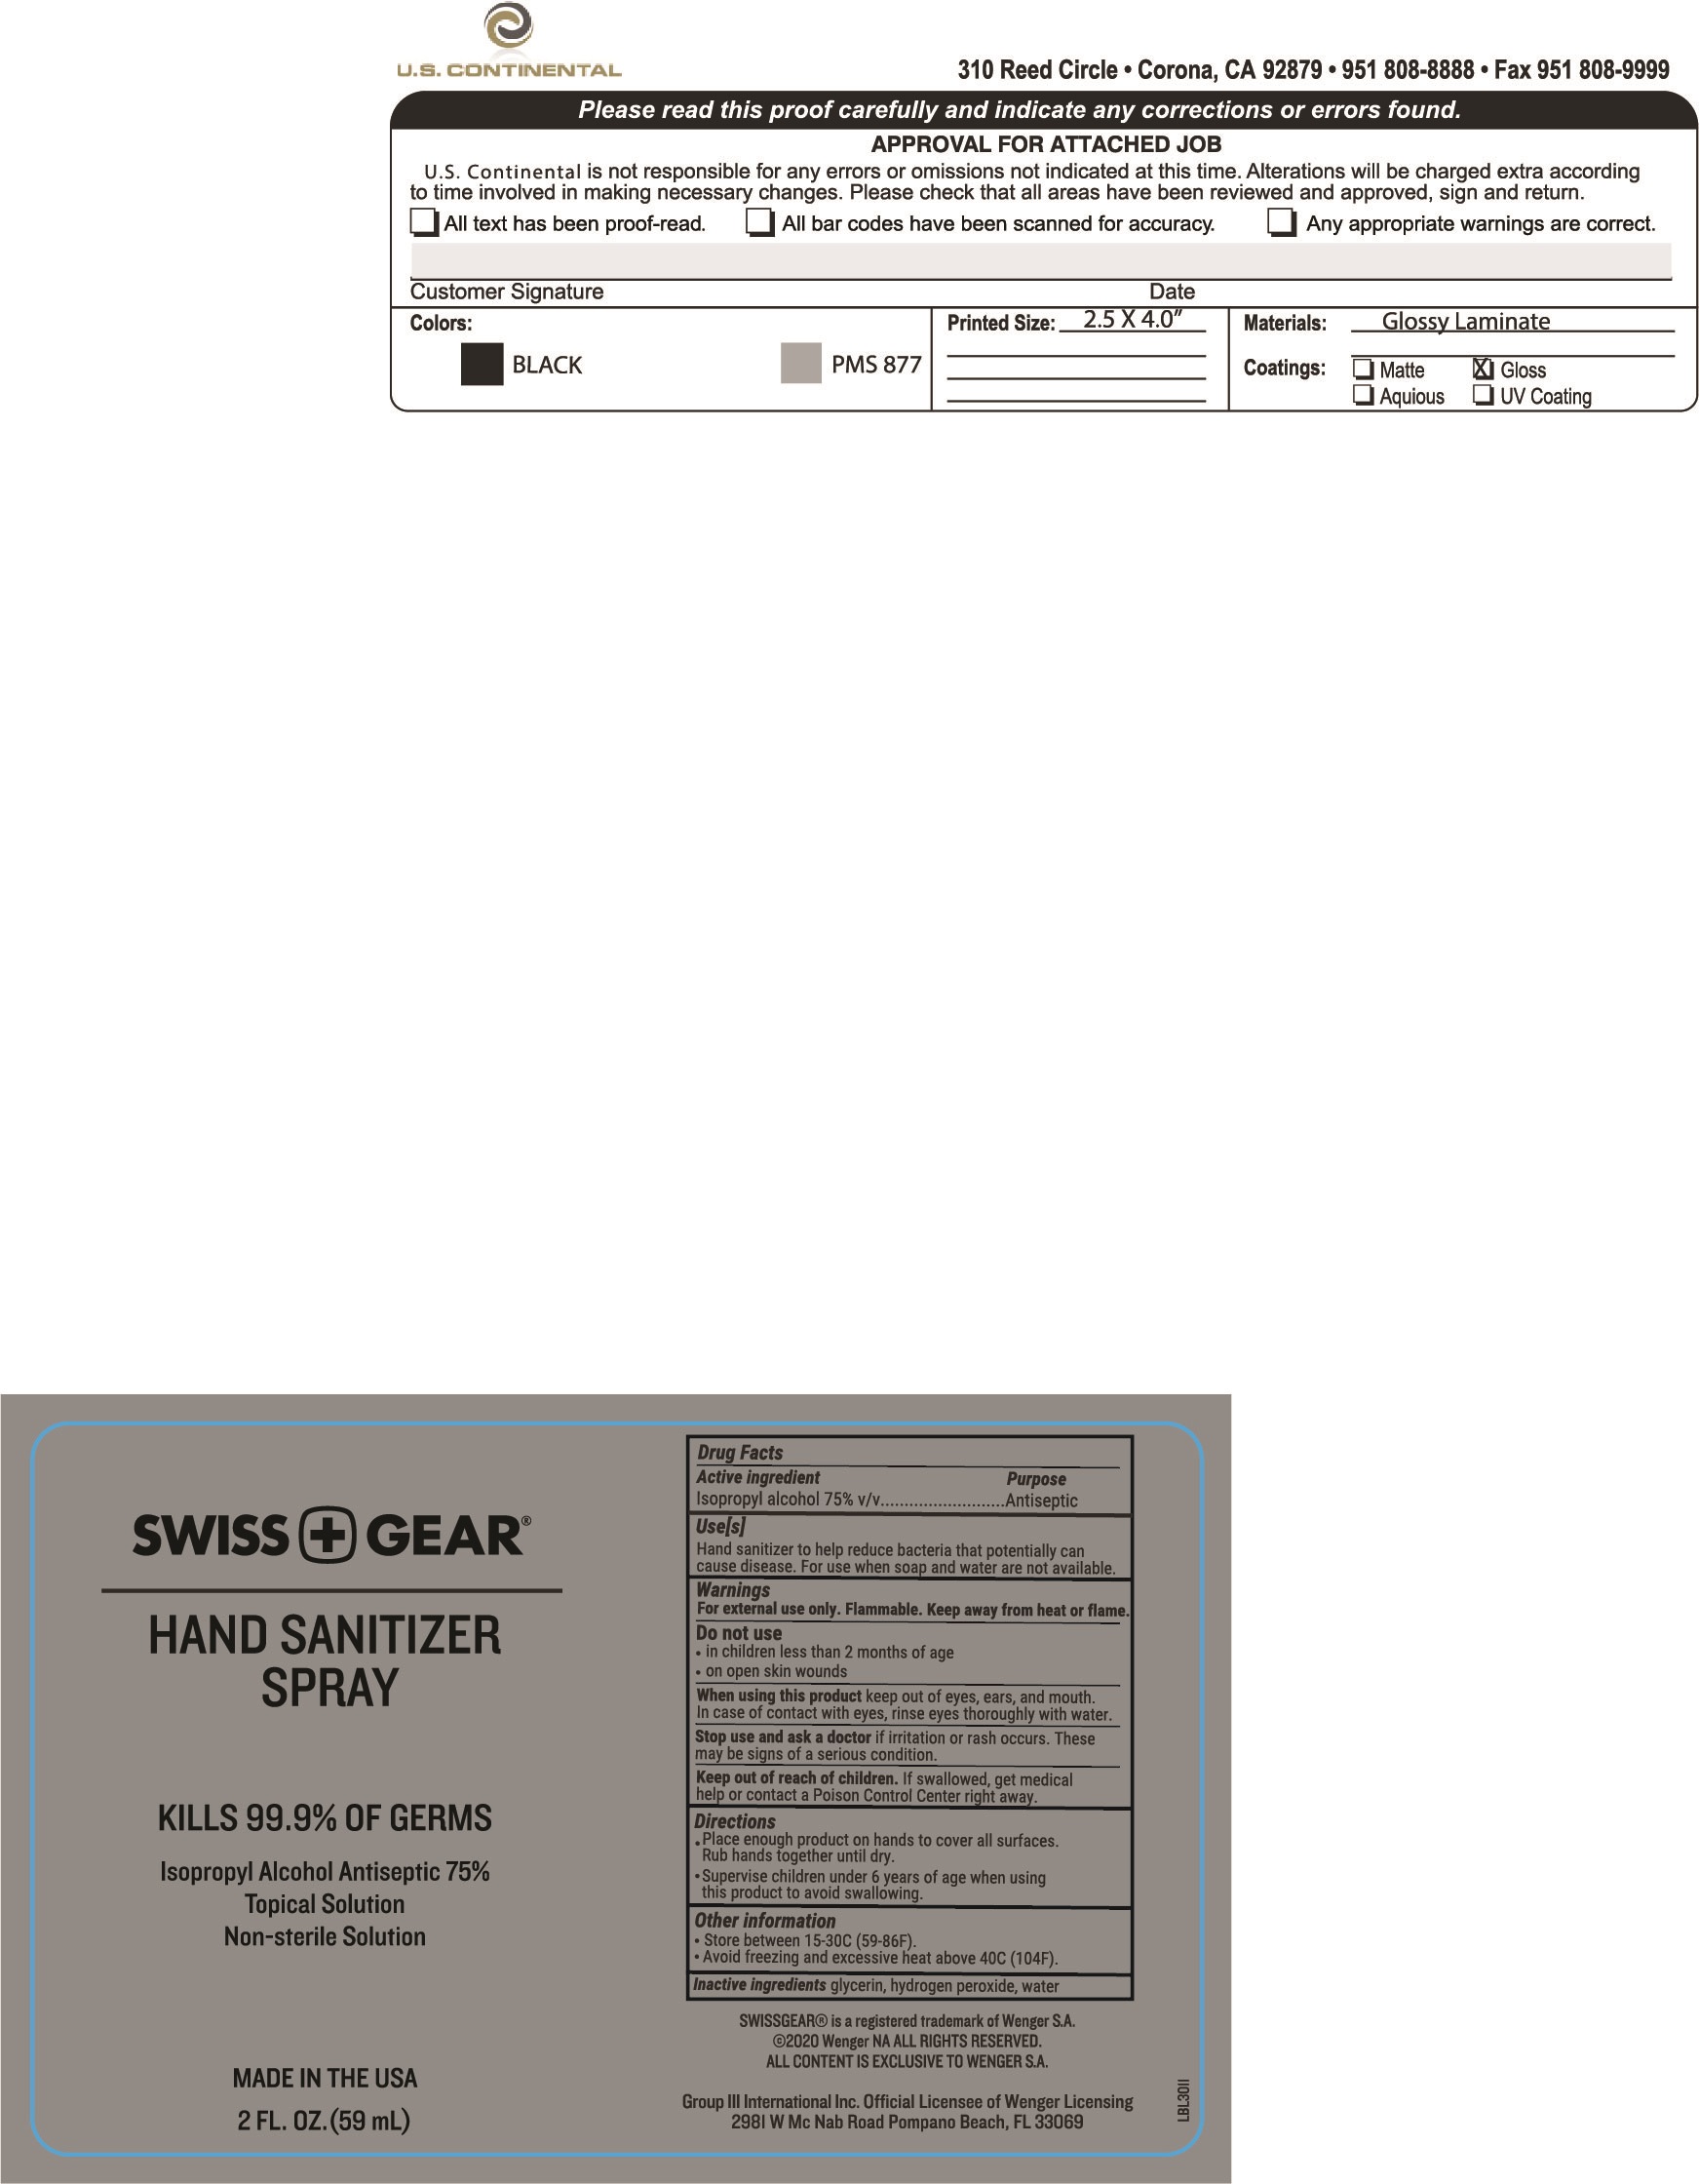 SwissGear 2 ounce Hand Sanitizer